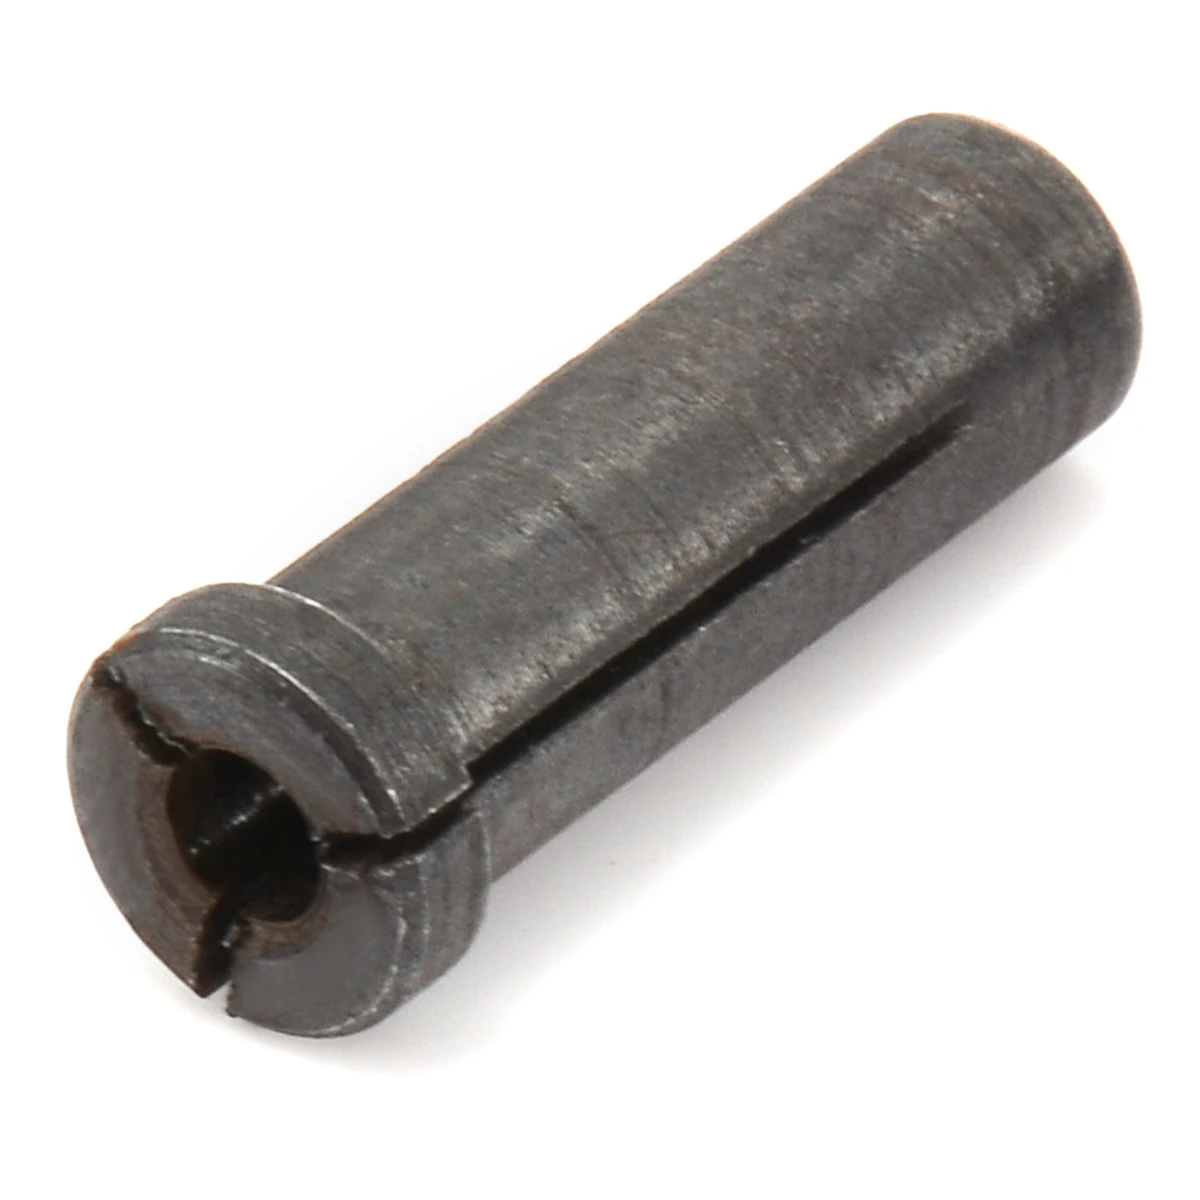 1 шт. черный металл редуктор патрон-адаптер цанговый 6 мм до мм 3 для Электрический шлифовальные станки поворотный инструменты